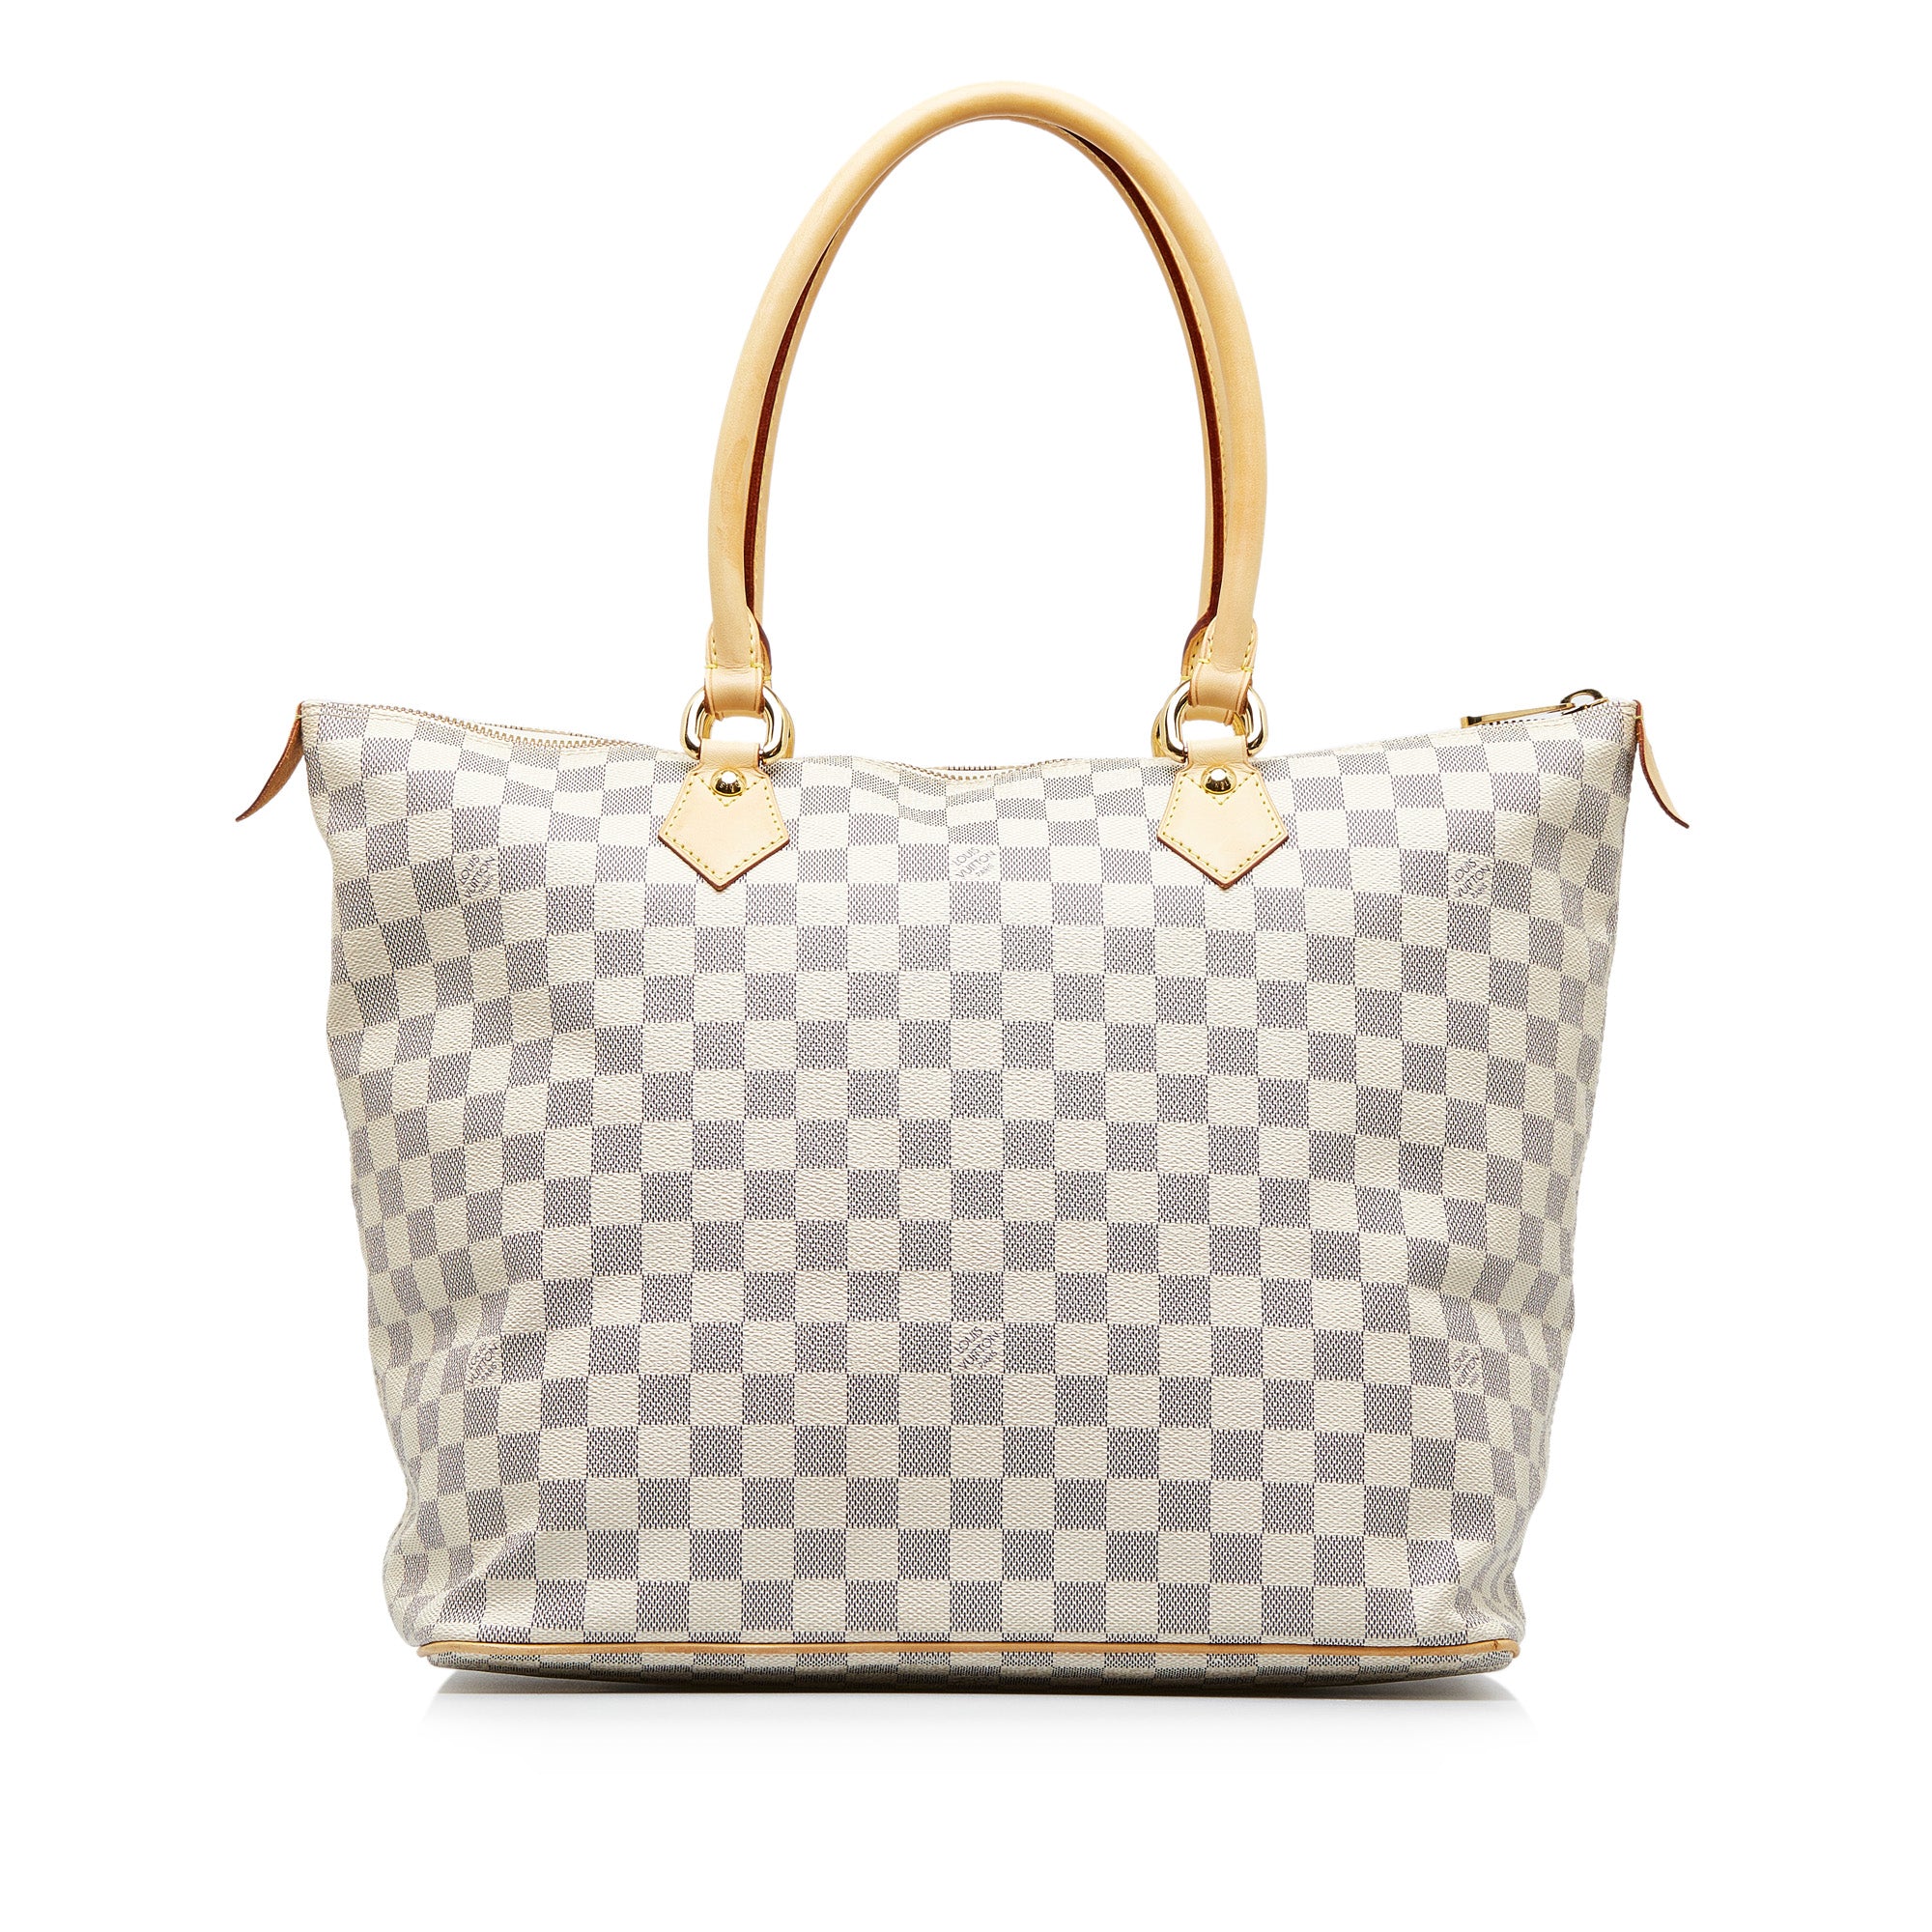 Authentic Louis Vuitton Damier Azur Saleya GM Shoulder Tote Bag